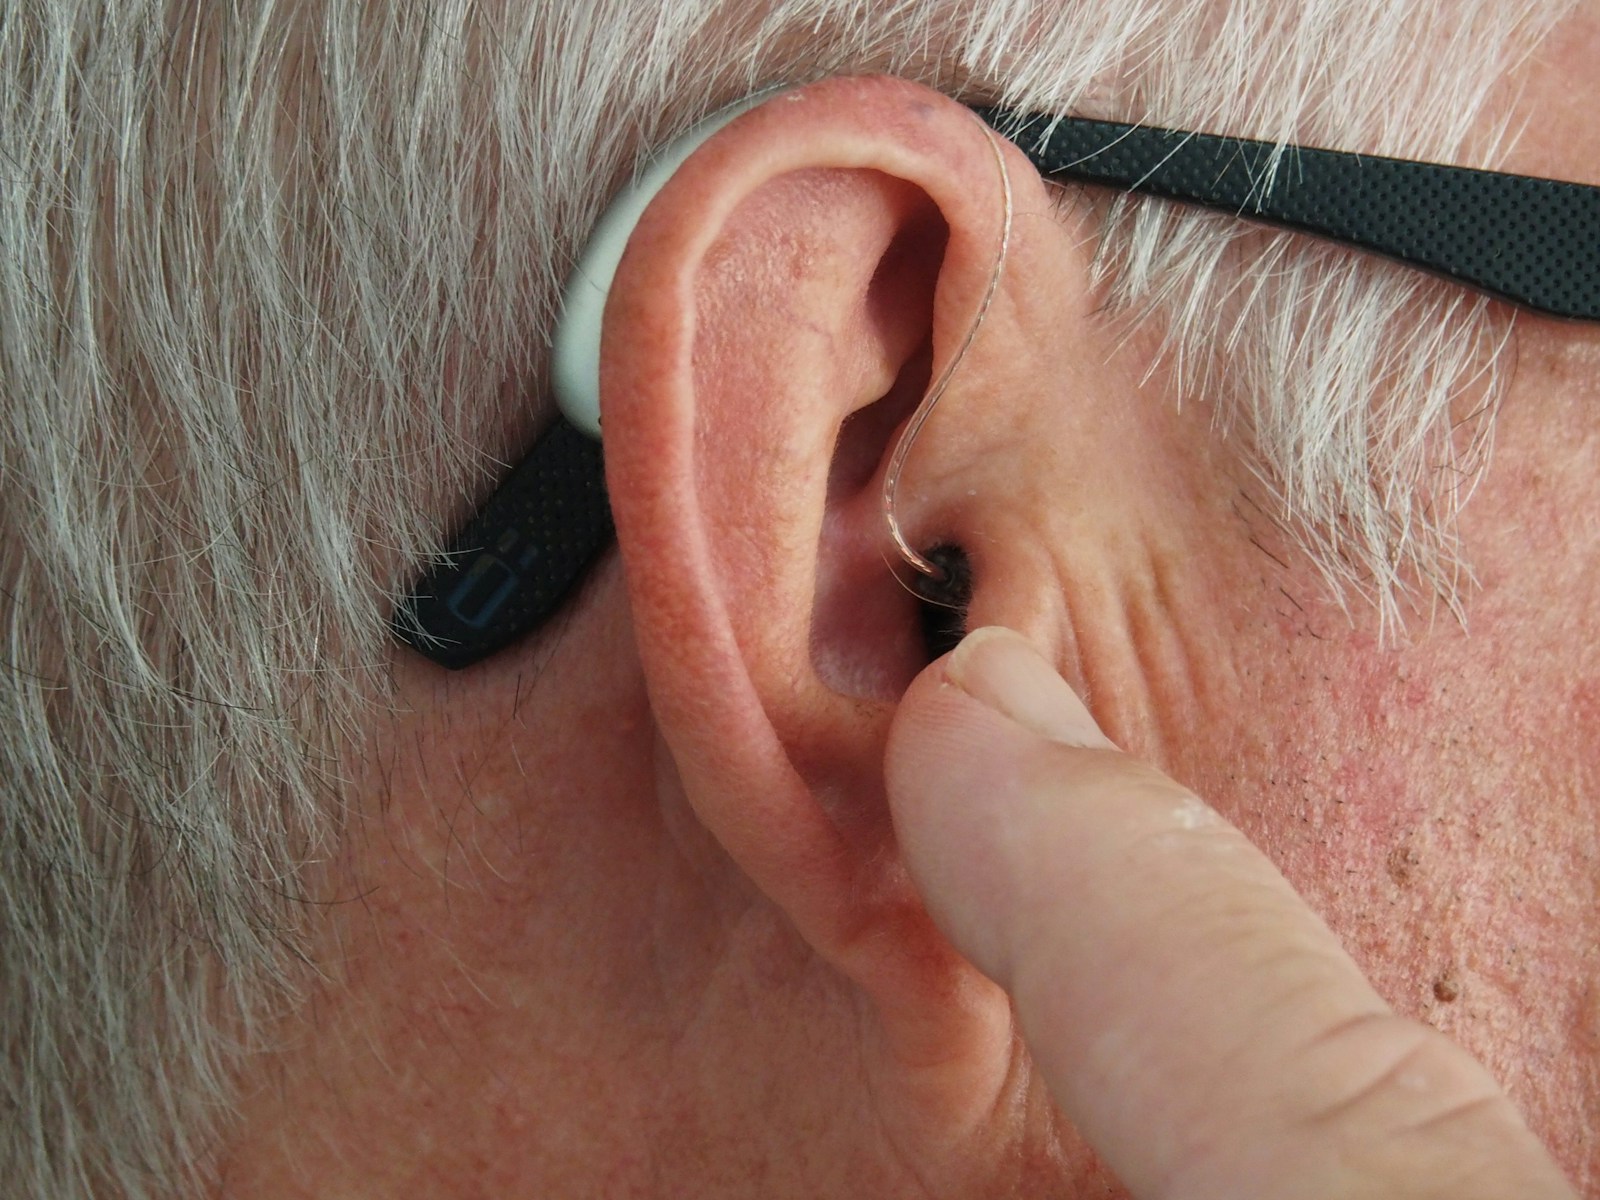 Høreapparat i Aalborg: find den bedste høreløsning lokalt